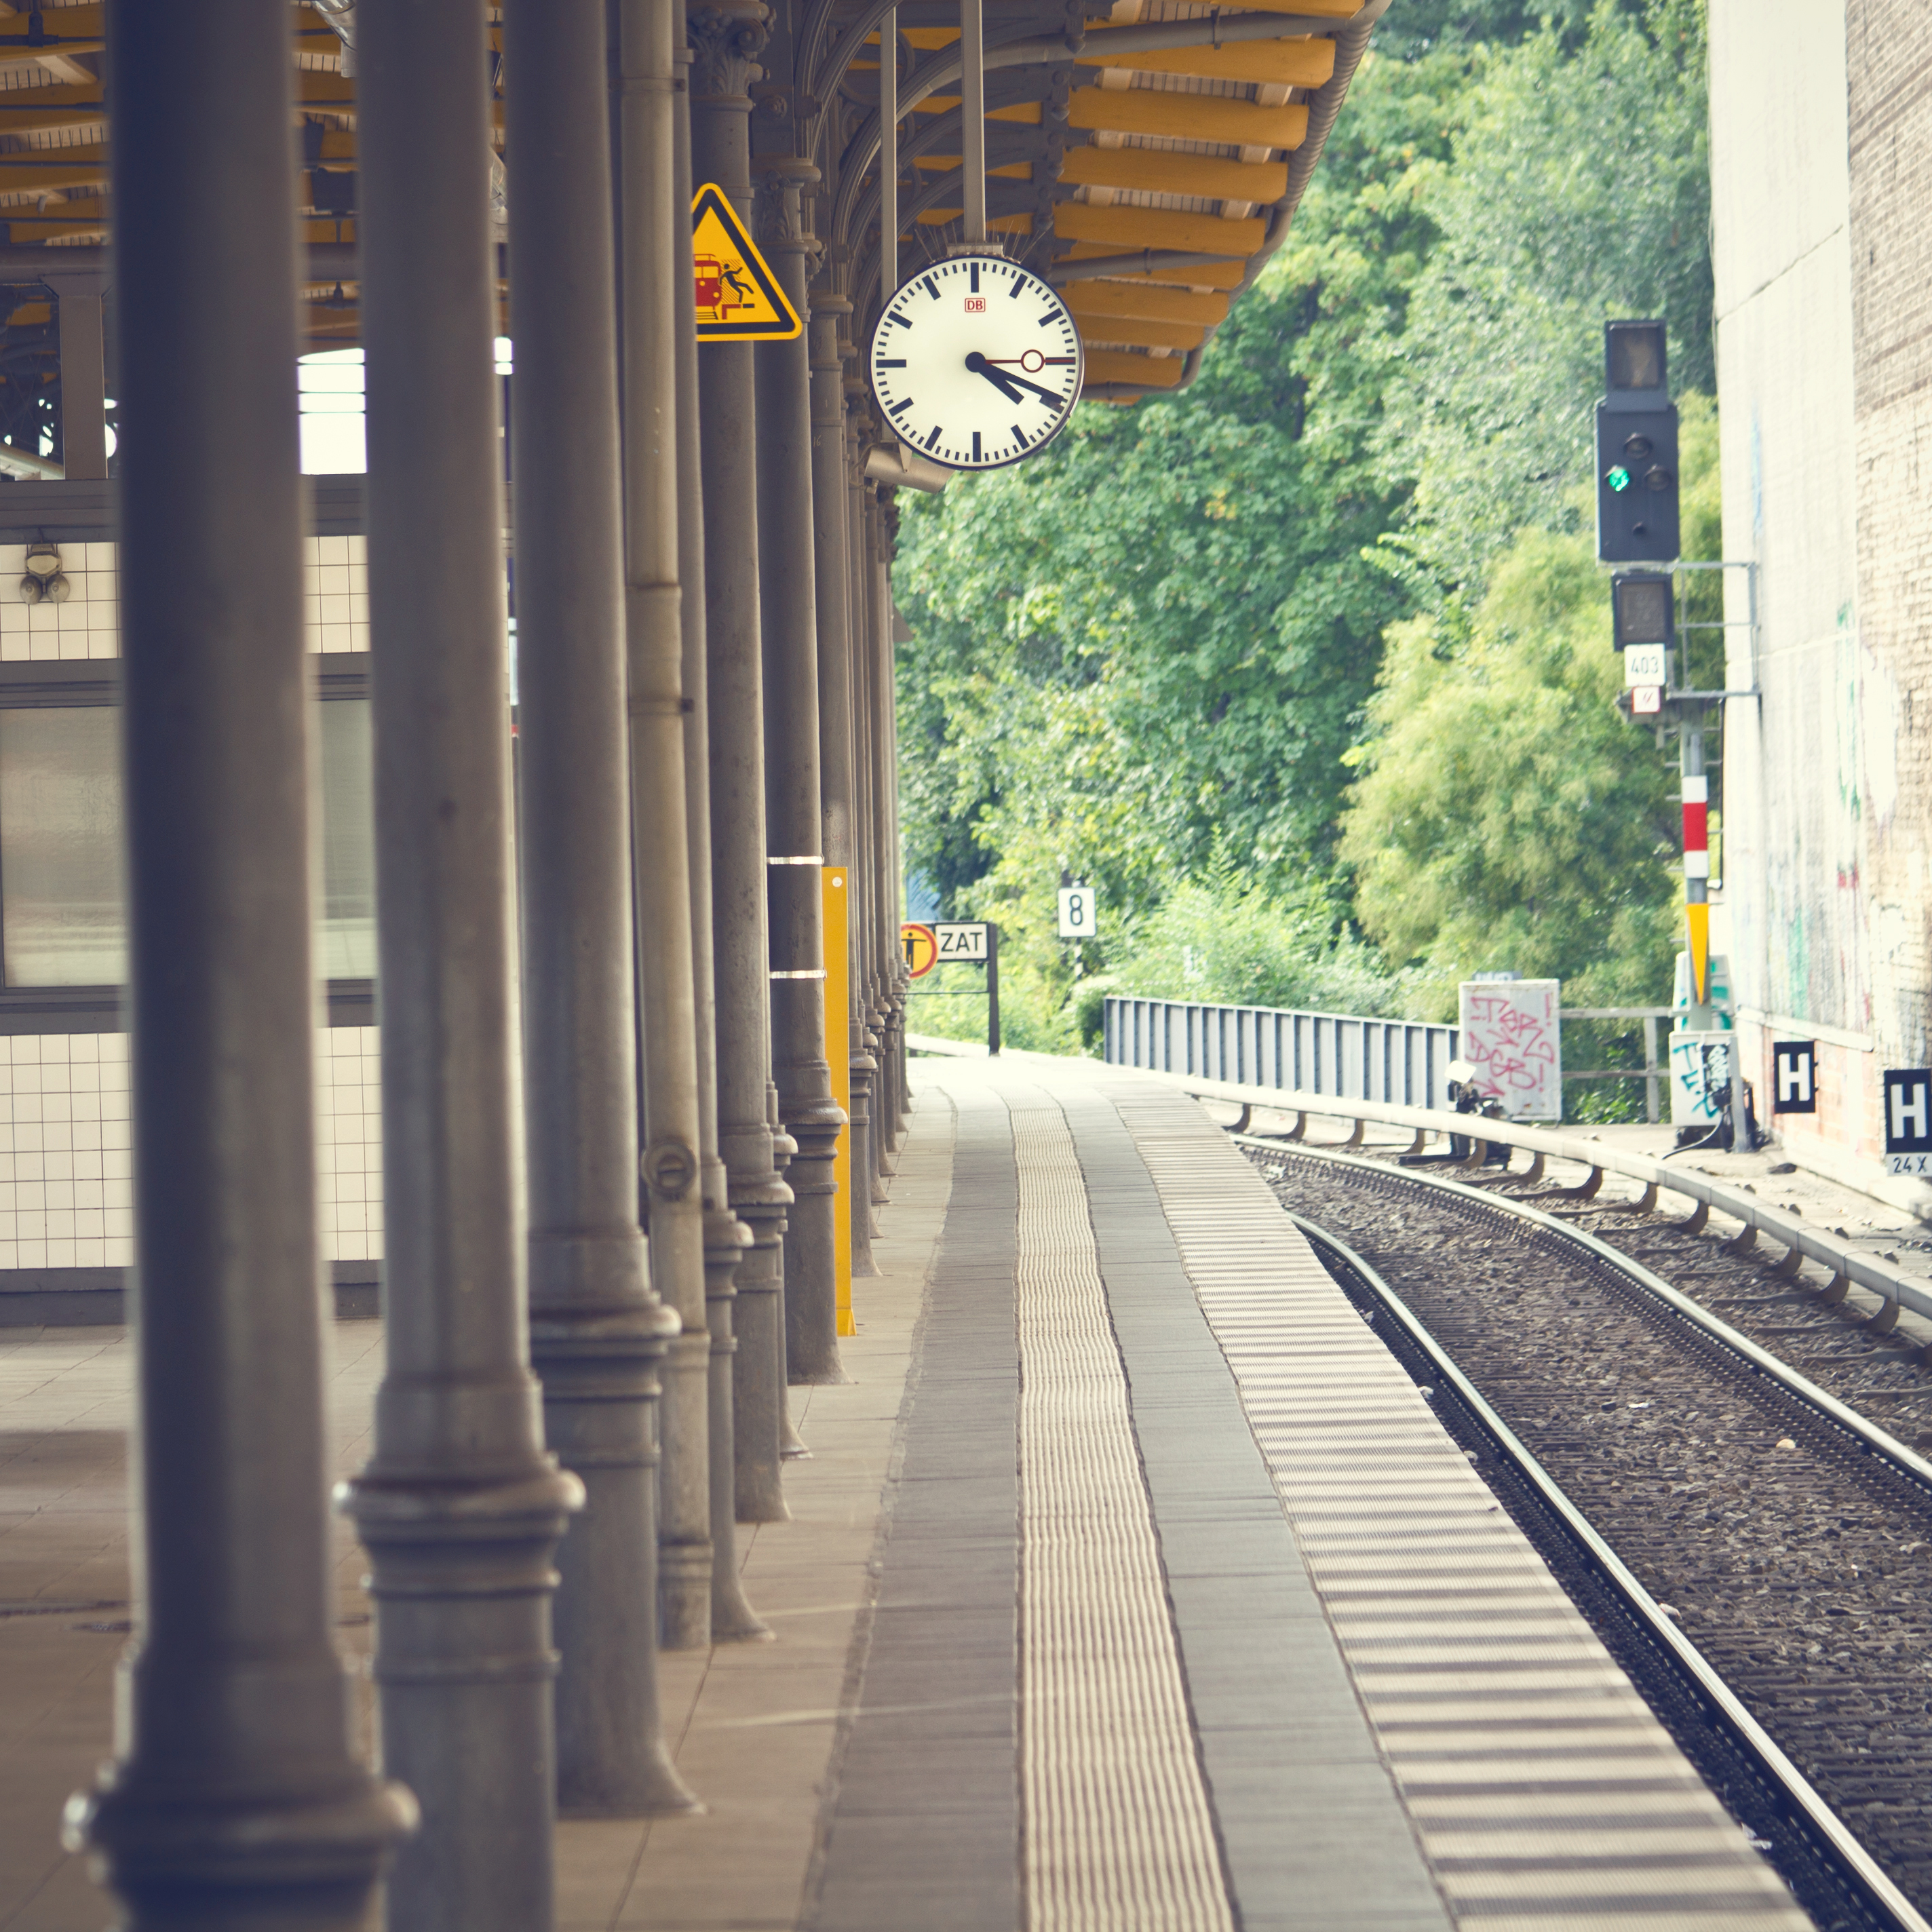 Fondo de estación de tren | Fuente: Shutterstock